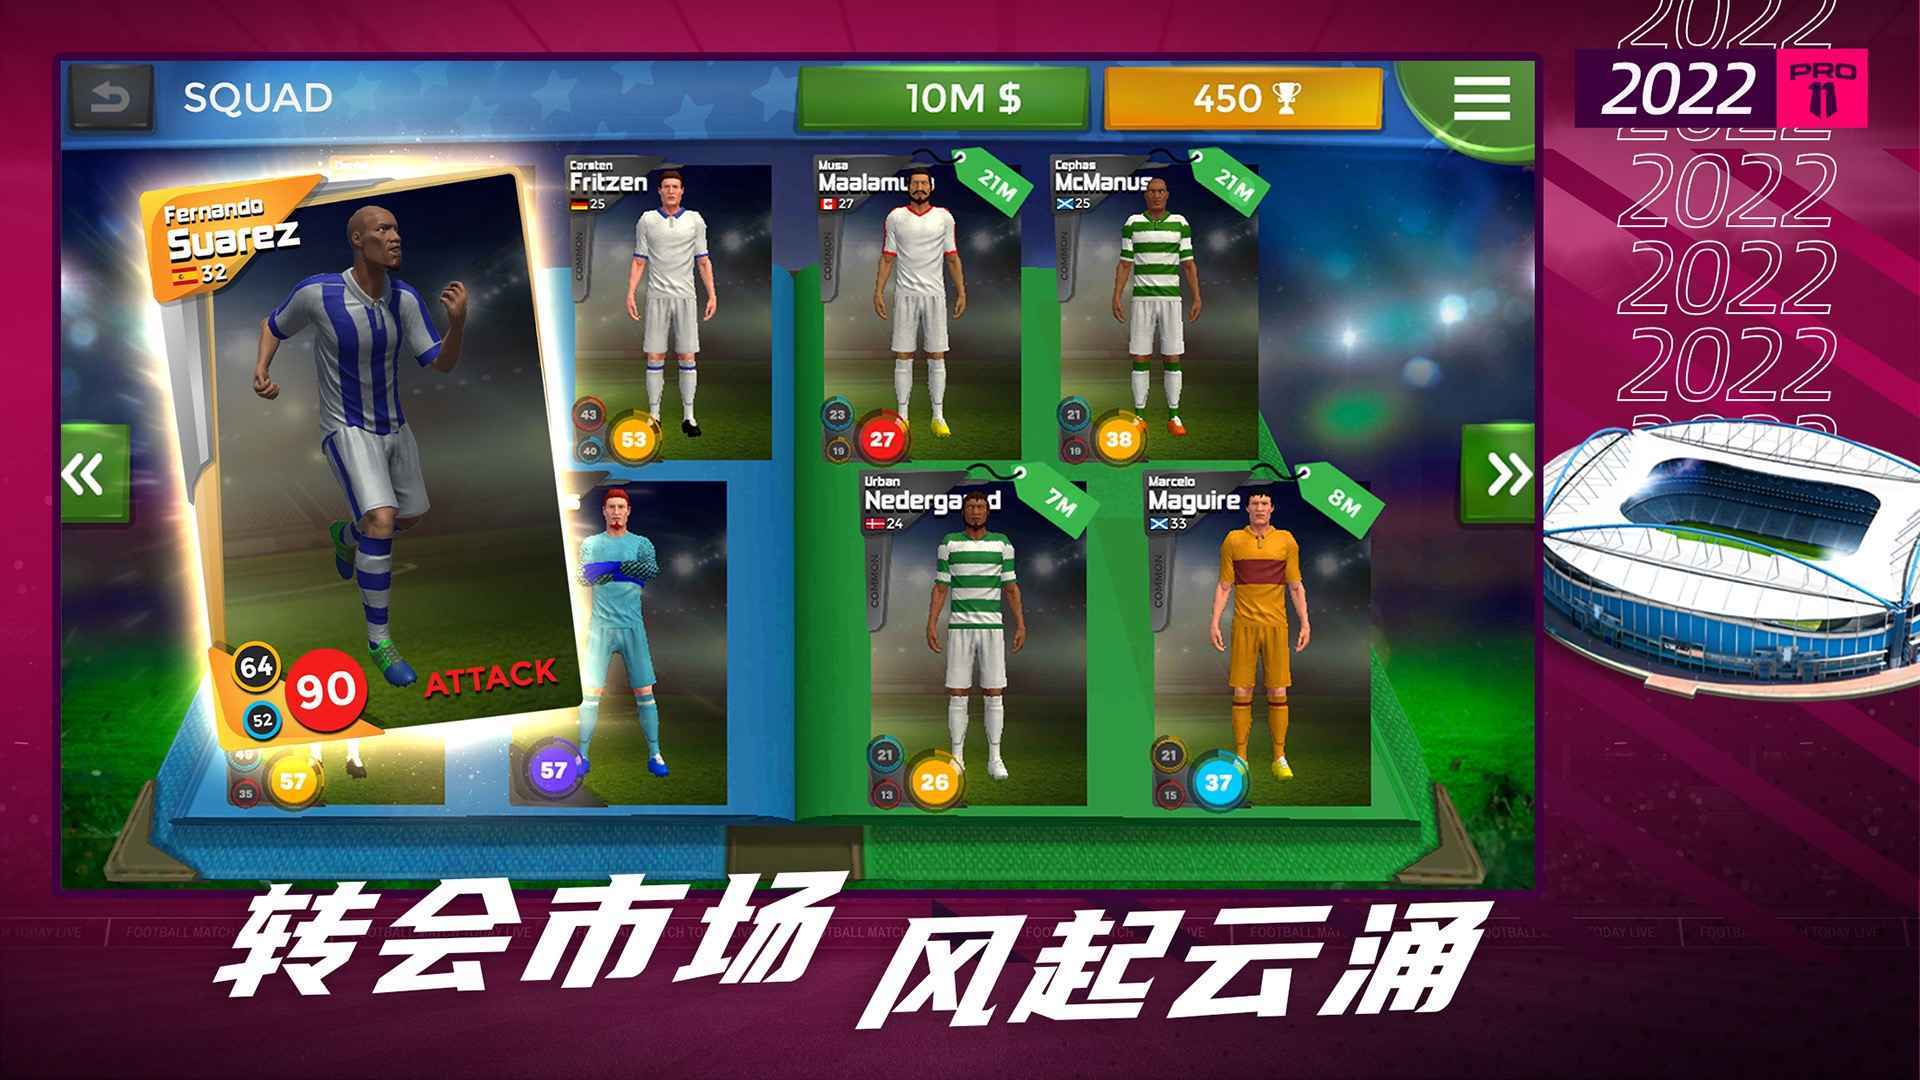 喜欢这款好玩的梦幻足球世界2022中文版游戏的玩家可以随时来下载玩耍